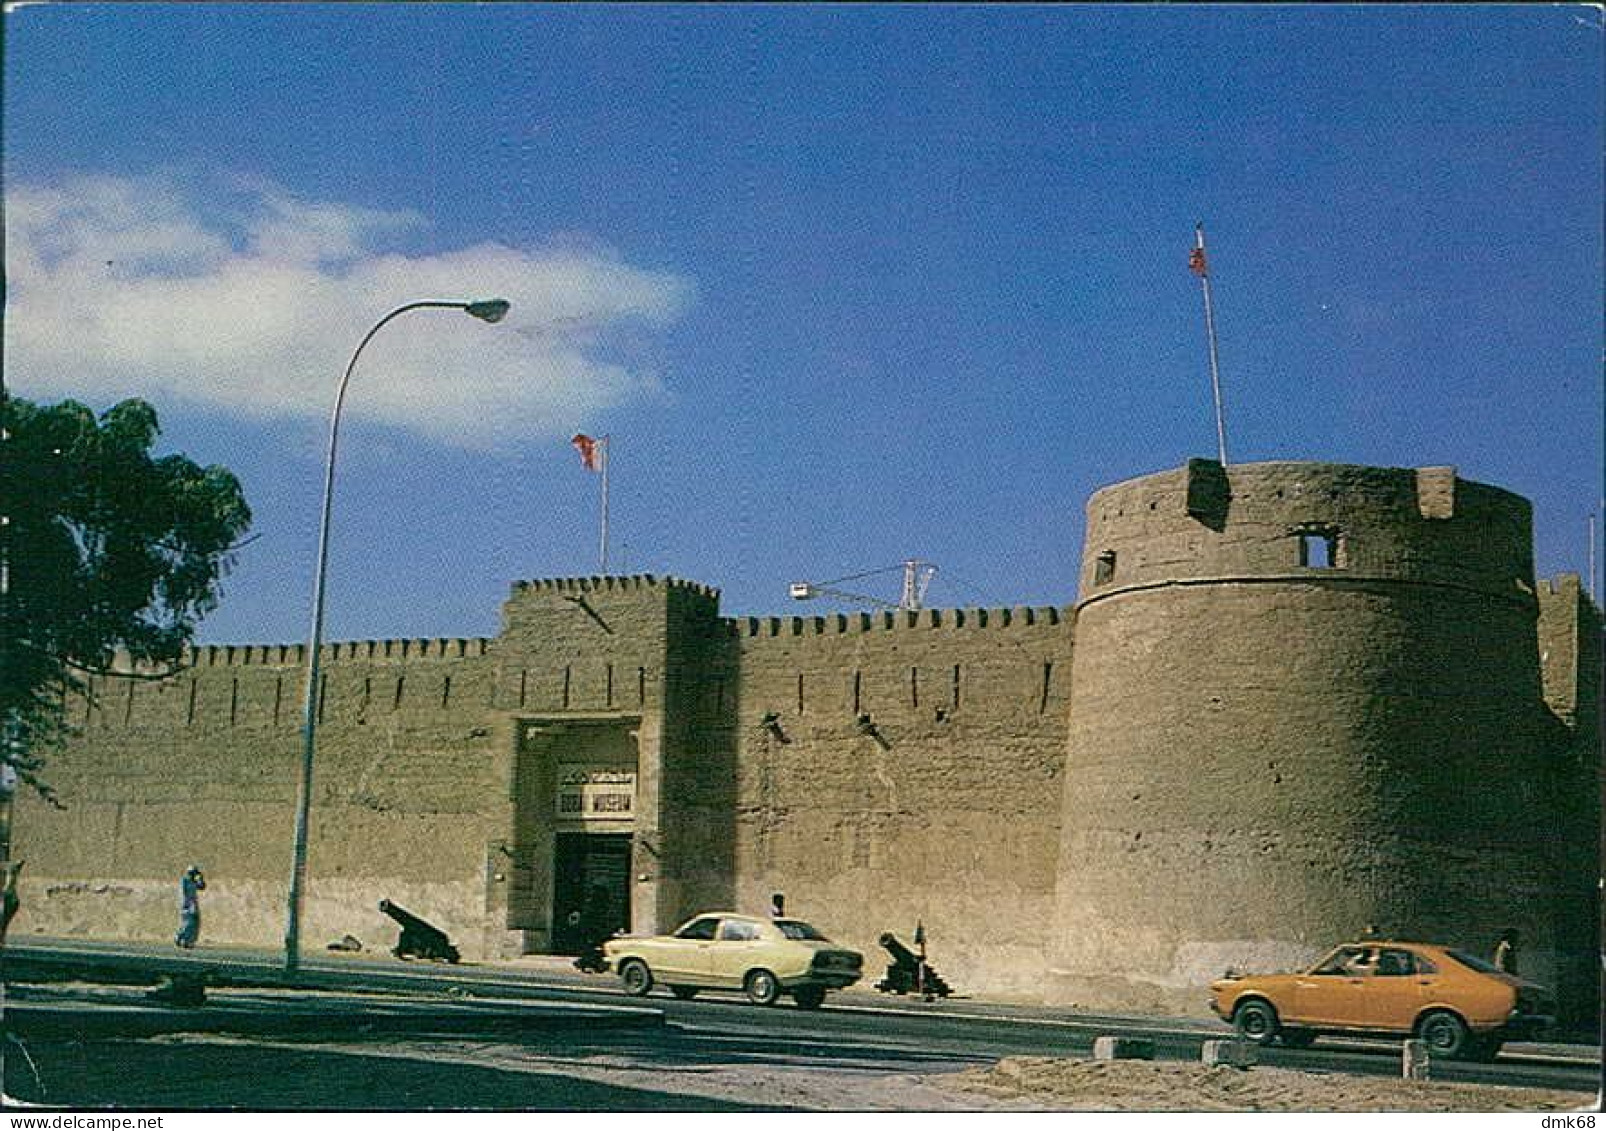 UNITED ARAB EMIRATES - DUBAI MUSEUM - PHOTO & COP. FAROOK INTERN. STATIONERY - 1970s/80s (17310) - United Arab Emirates